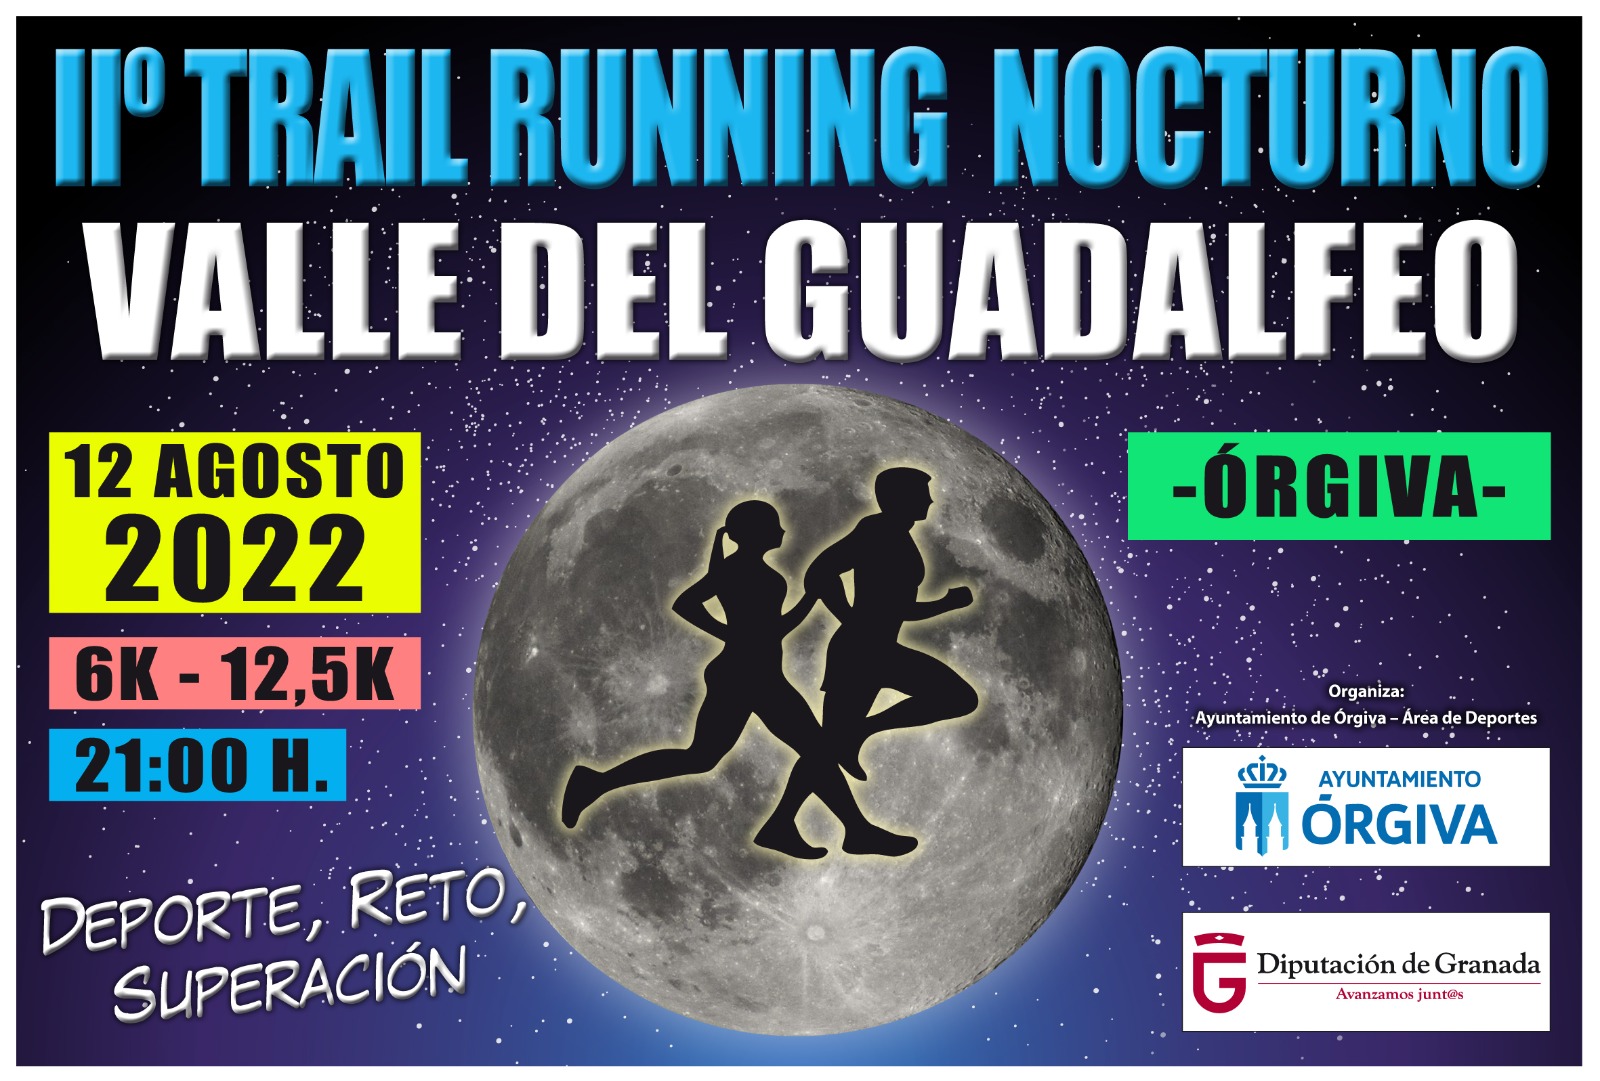 II TRAIL RUNNING NOCTURNO "VALLE DEL GUADALFEO"